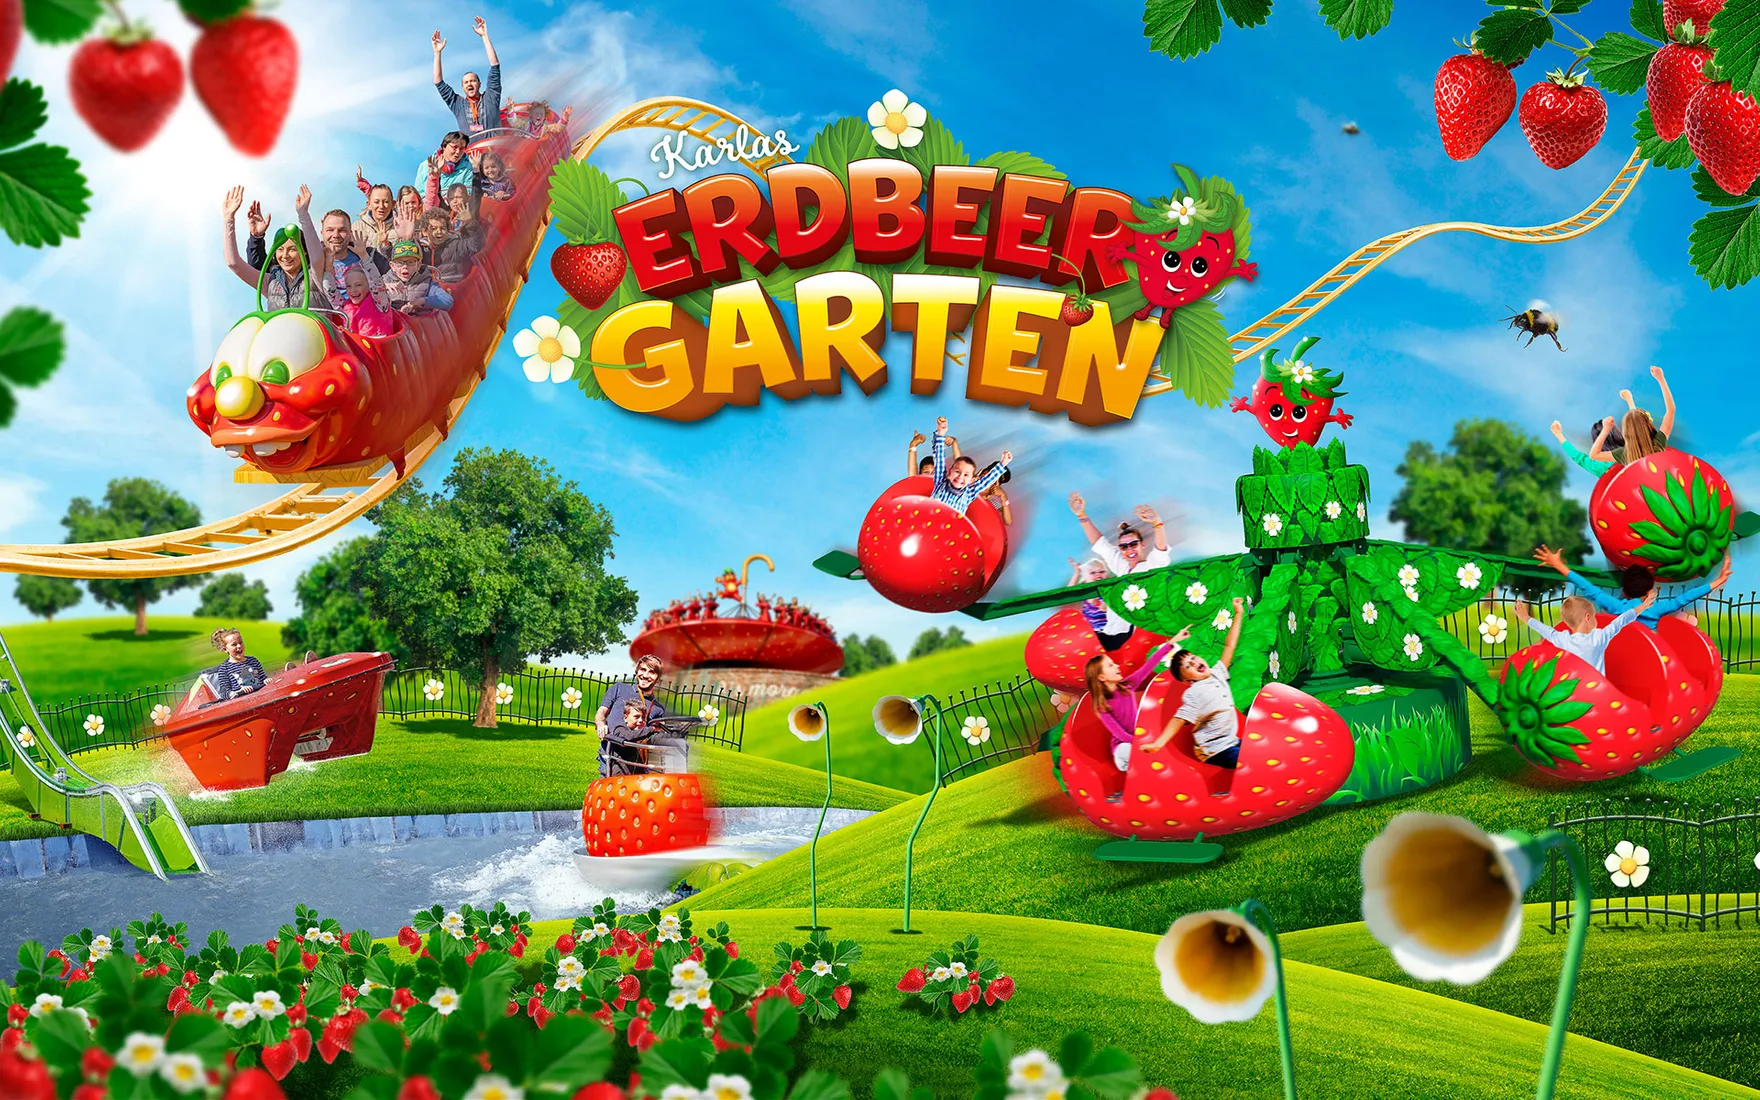 Erdbeer-Garten Elstal